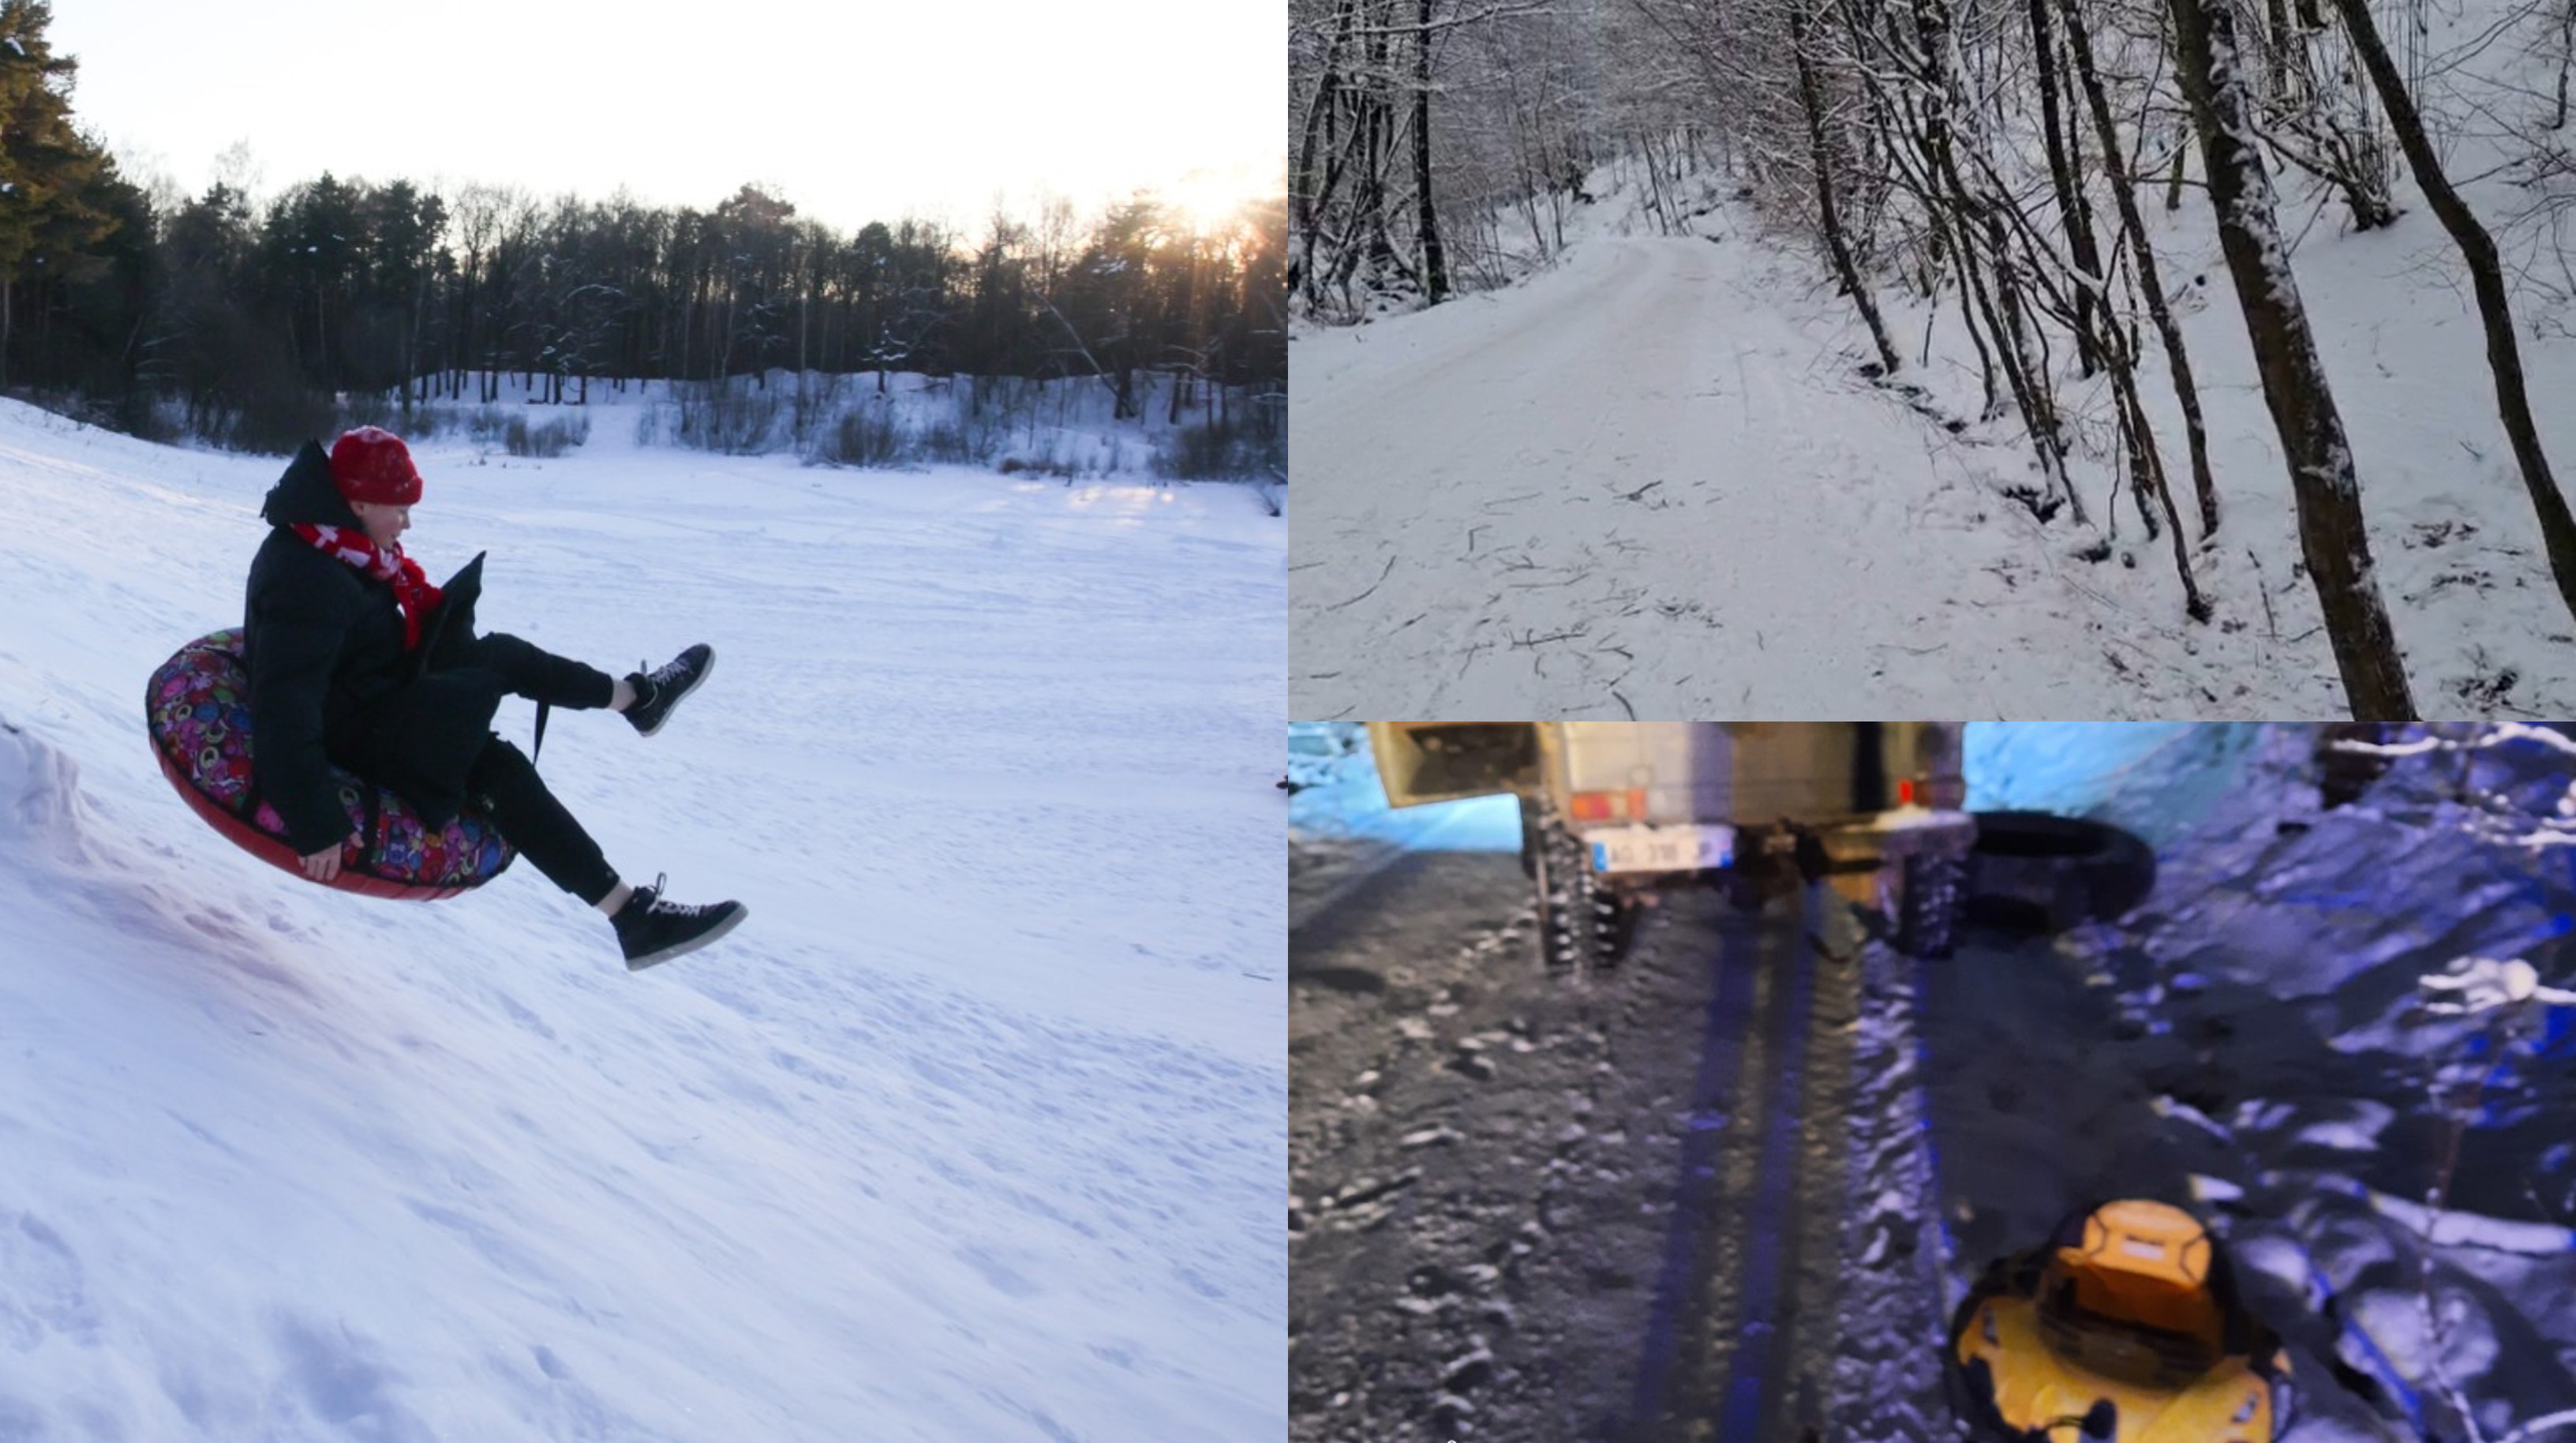 Irreplaceable name Expect it Ce este şi cum se practică în mod corect snow-tubing-ul, sportul care a  ucis un tânăr şi a rănit alţi doi, in Satu Mare | Observatornews.ro